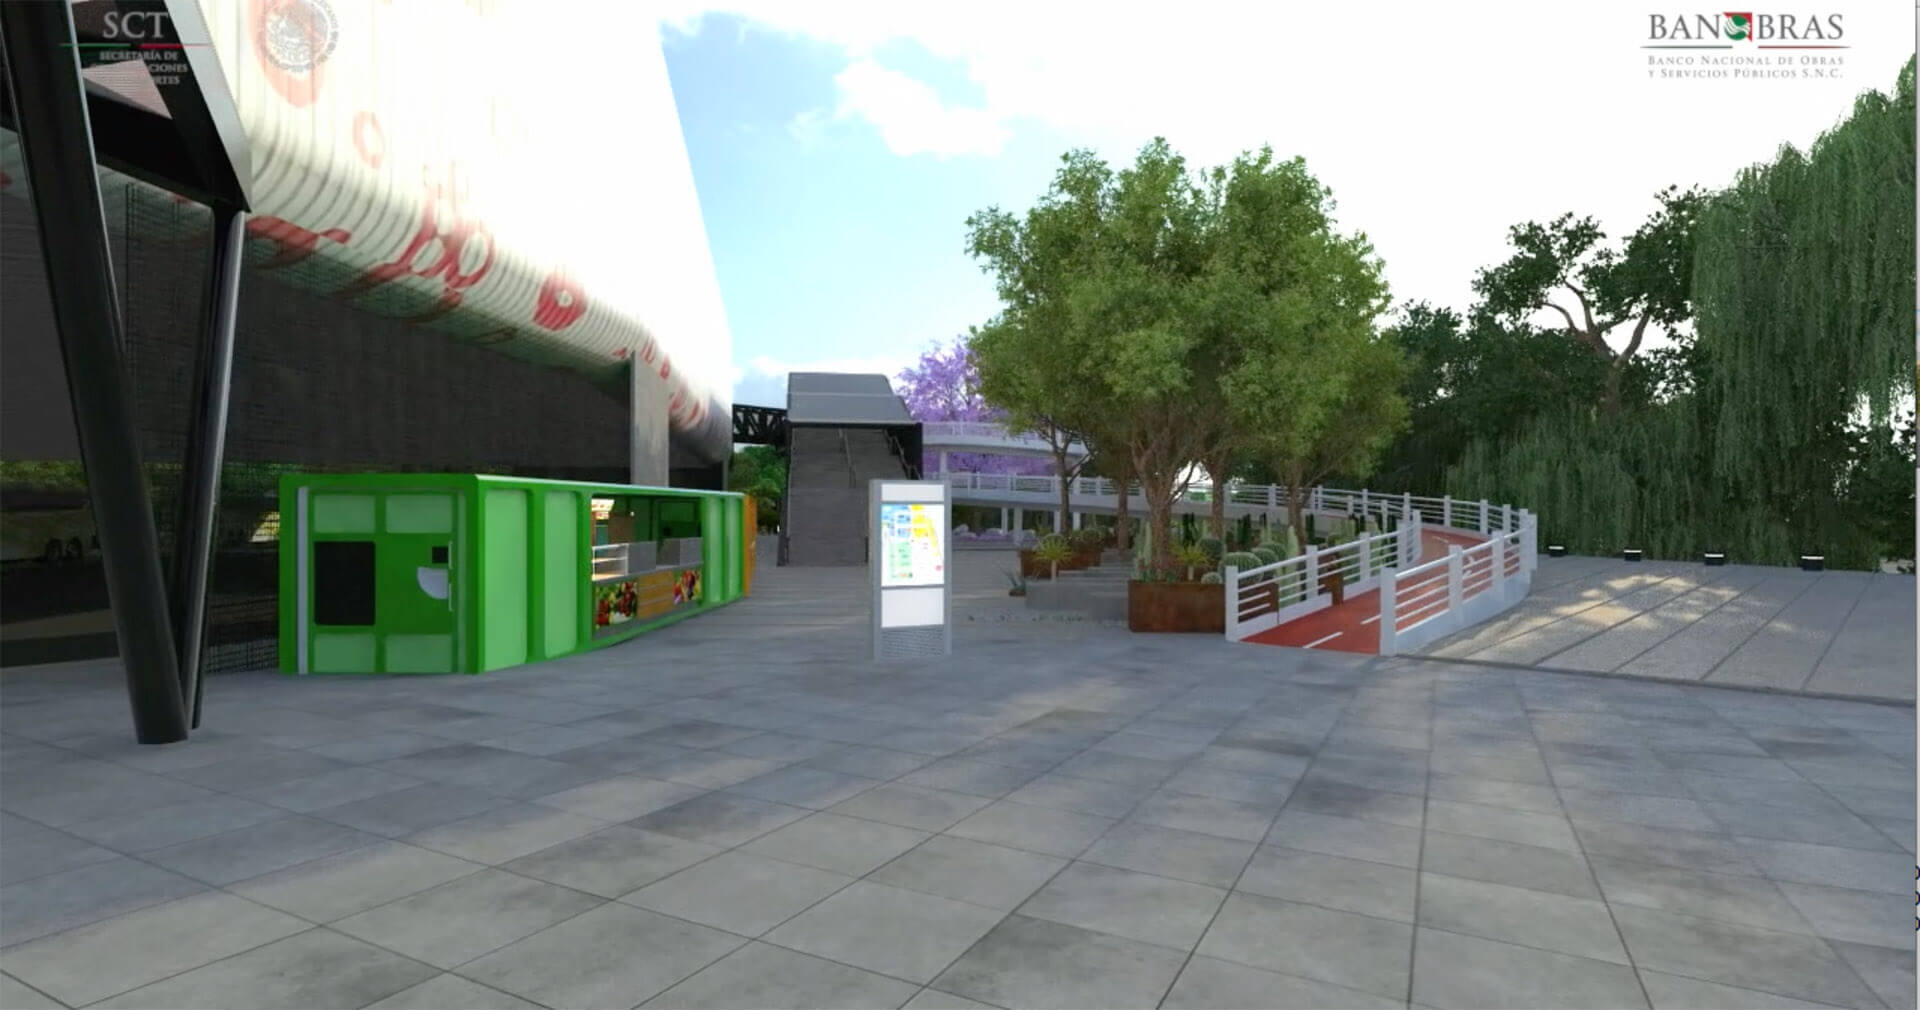 MC station plaza proposal